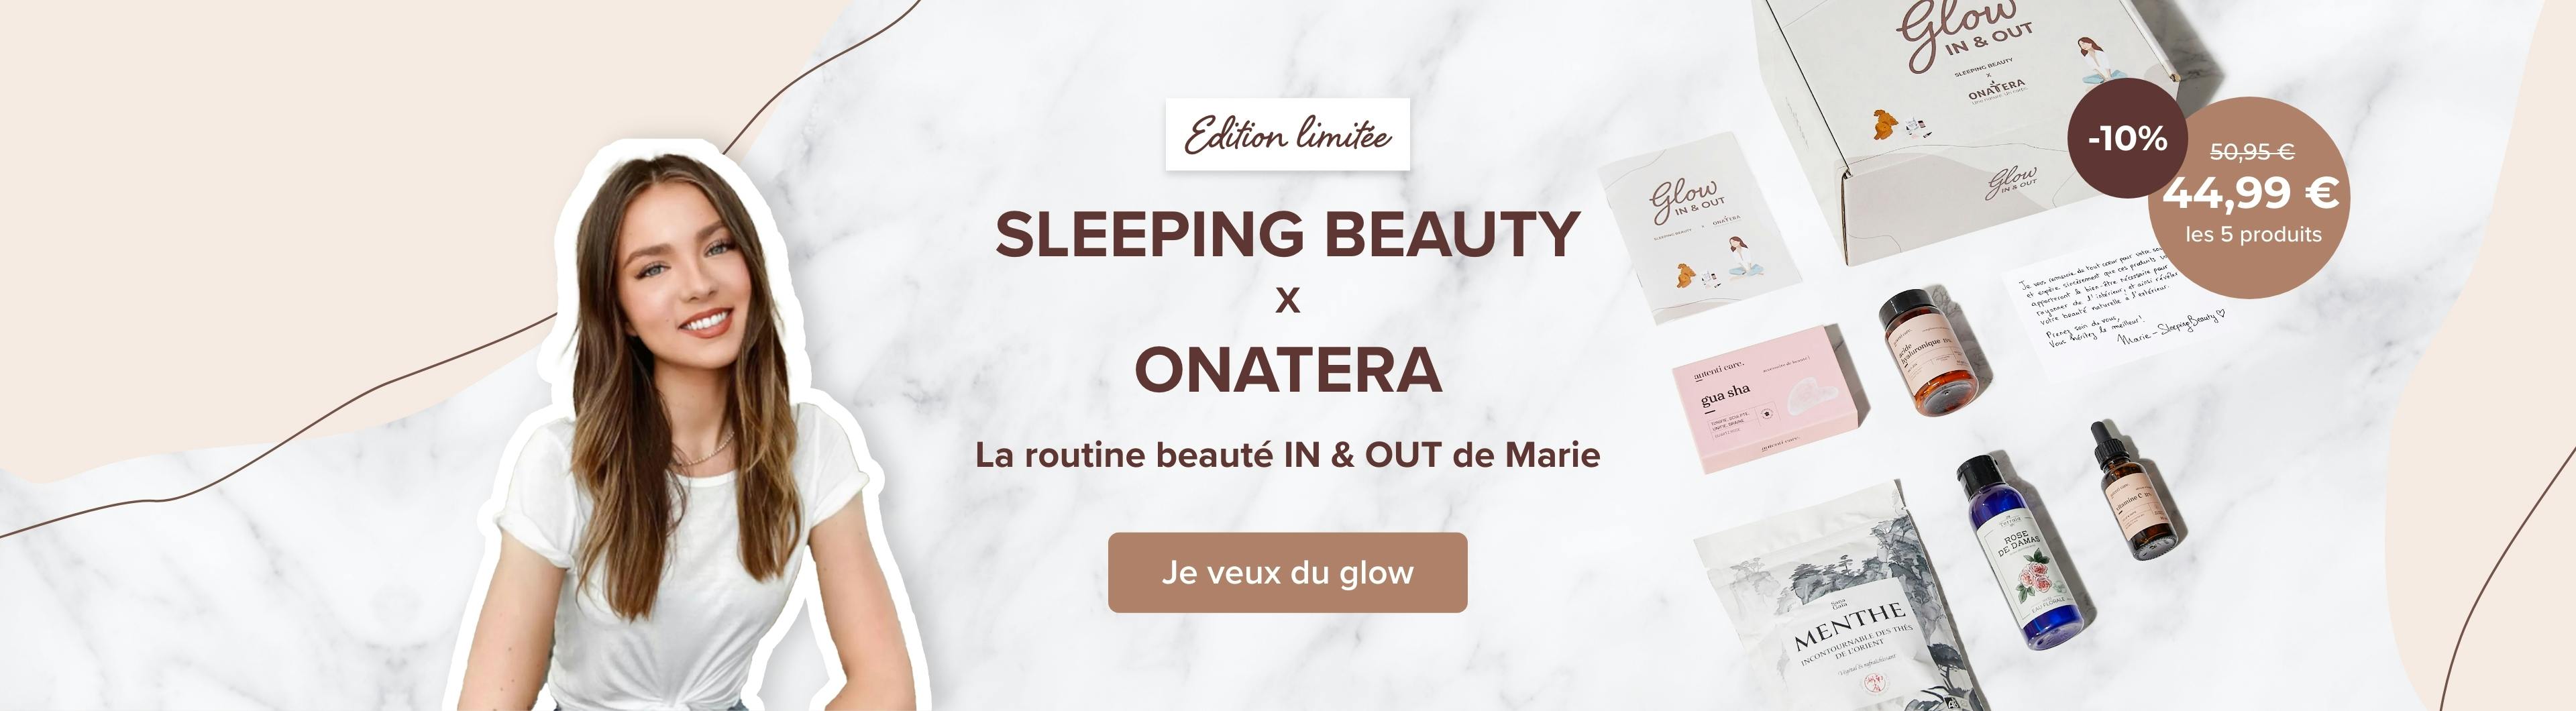 Sleeping beauty - Onatera : la routine beauté in & out de Marie